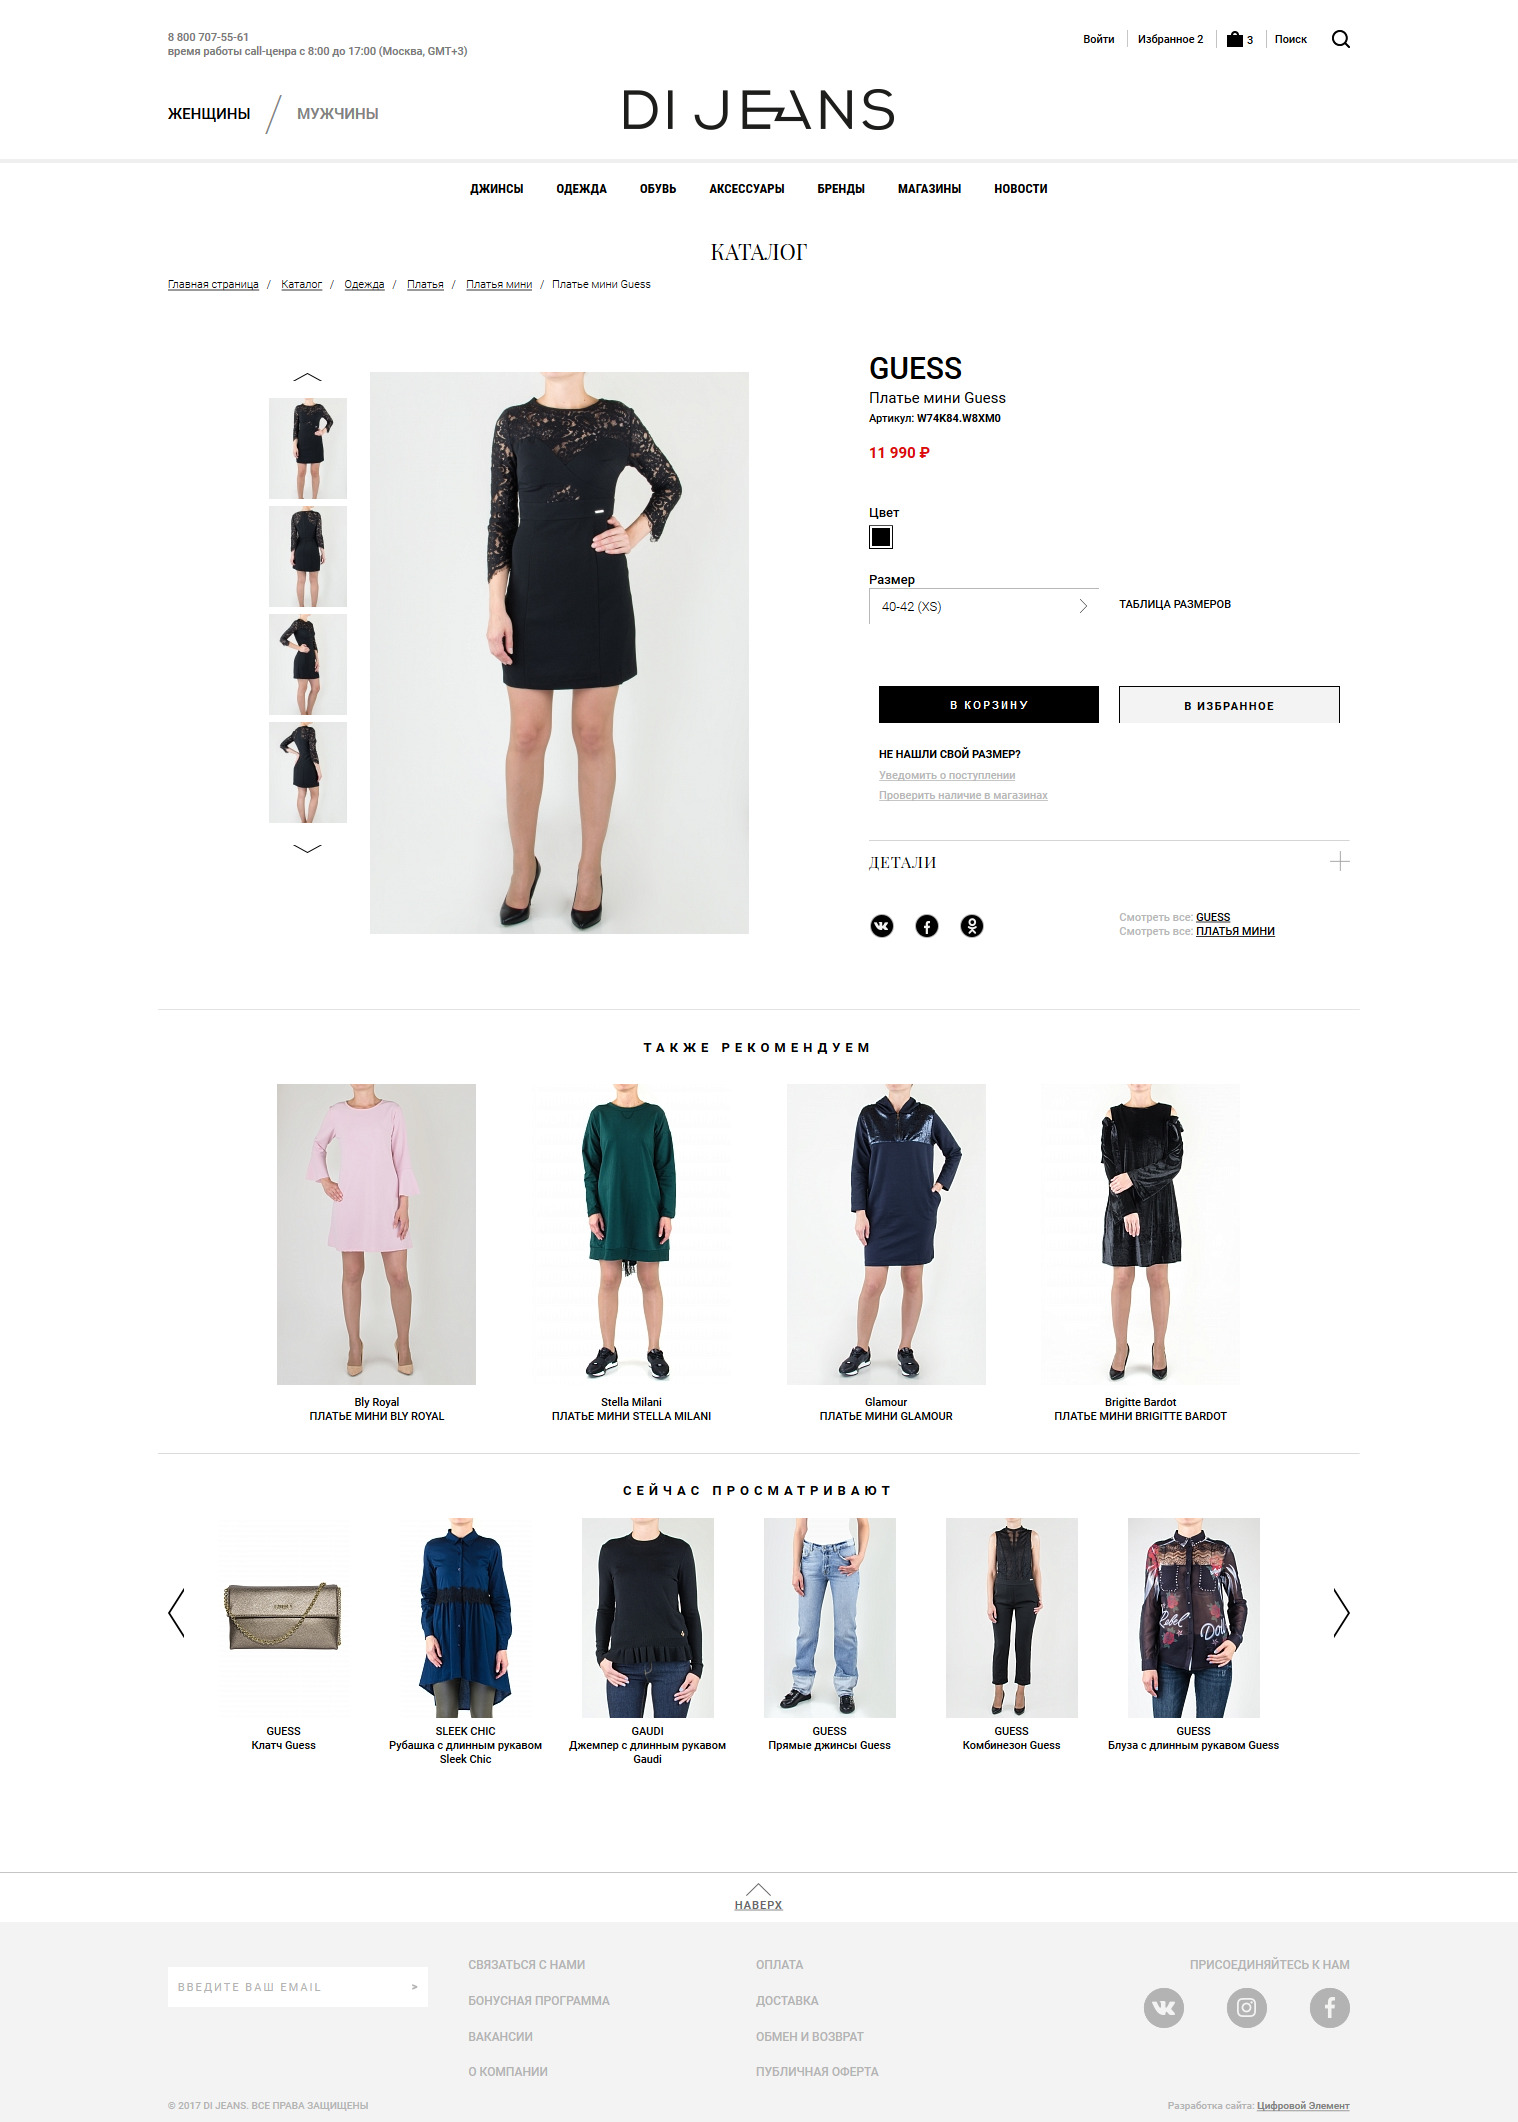 интернет-магазин модной брендовой одежды di jeans